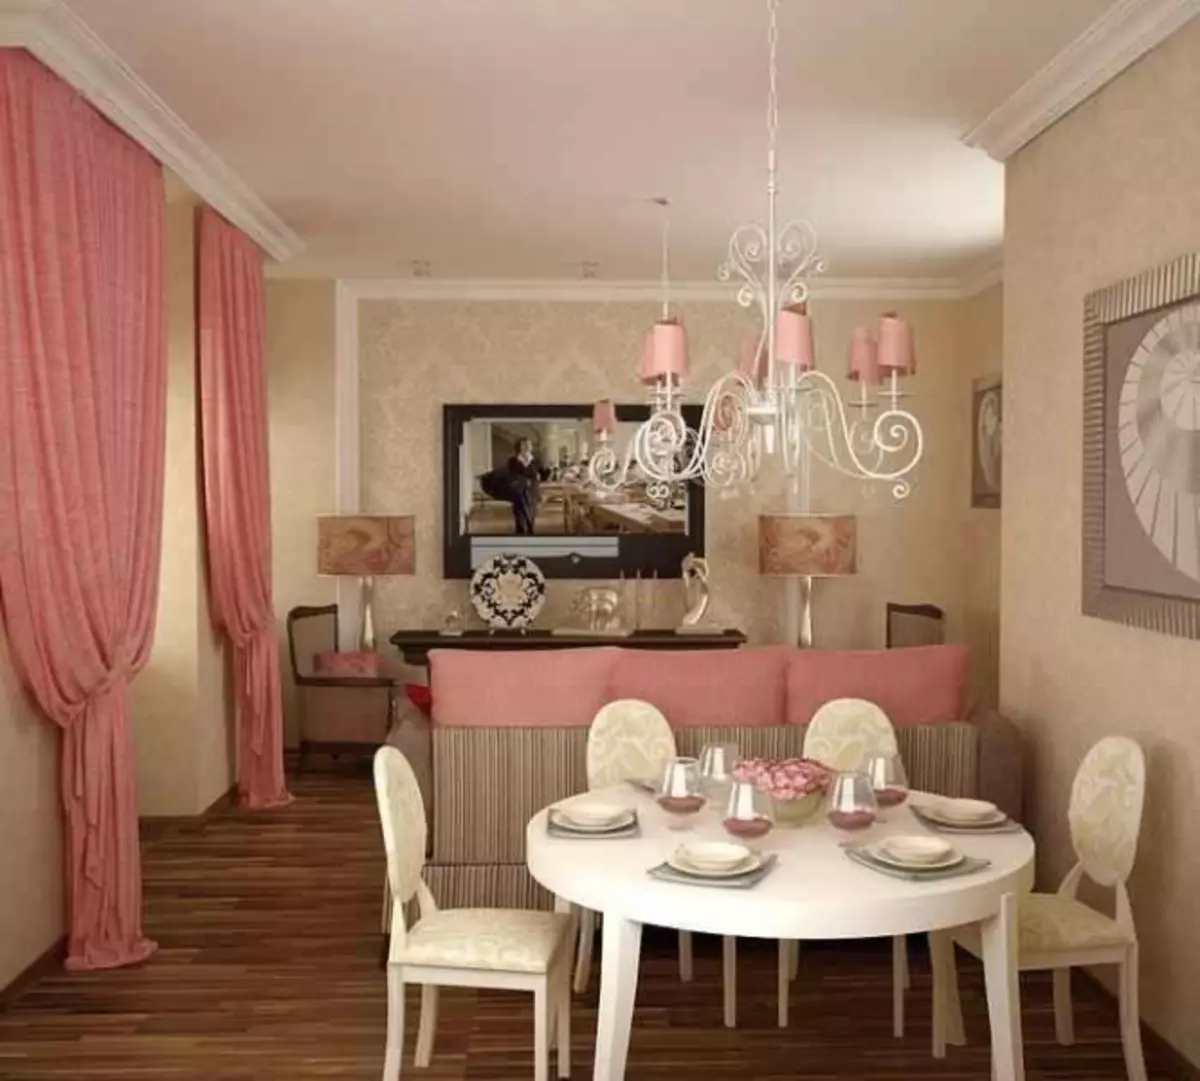 Living Room Design Photo 2019 Moderne ideeënbehang: yn it ynterieur, trendy, stylich, fideo